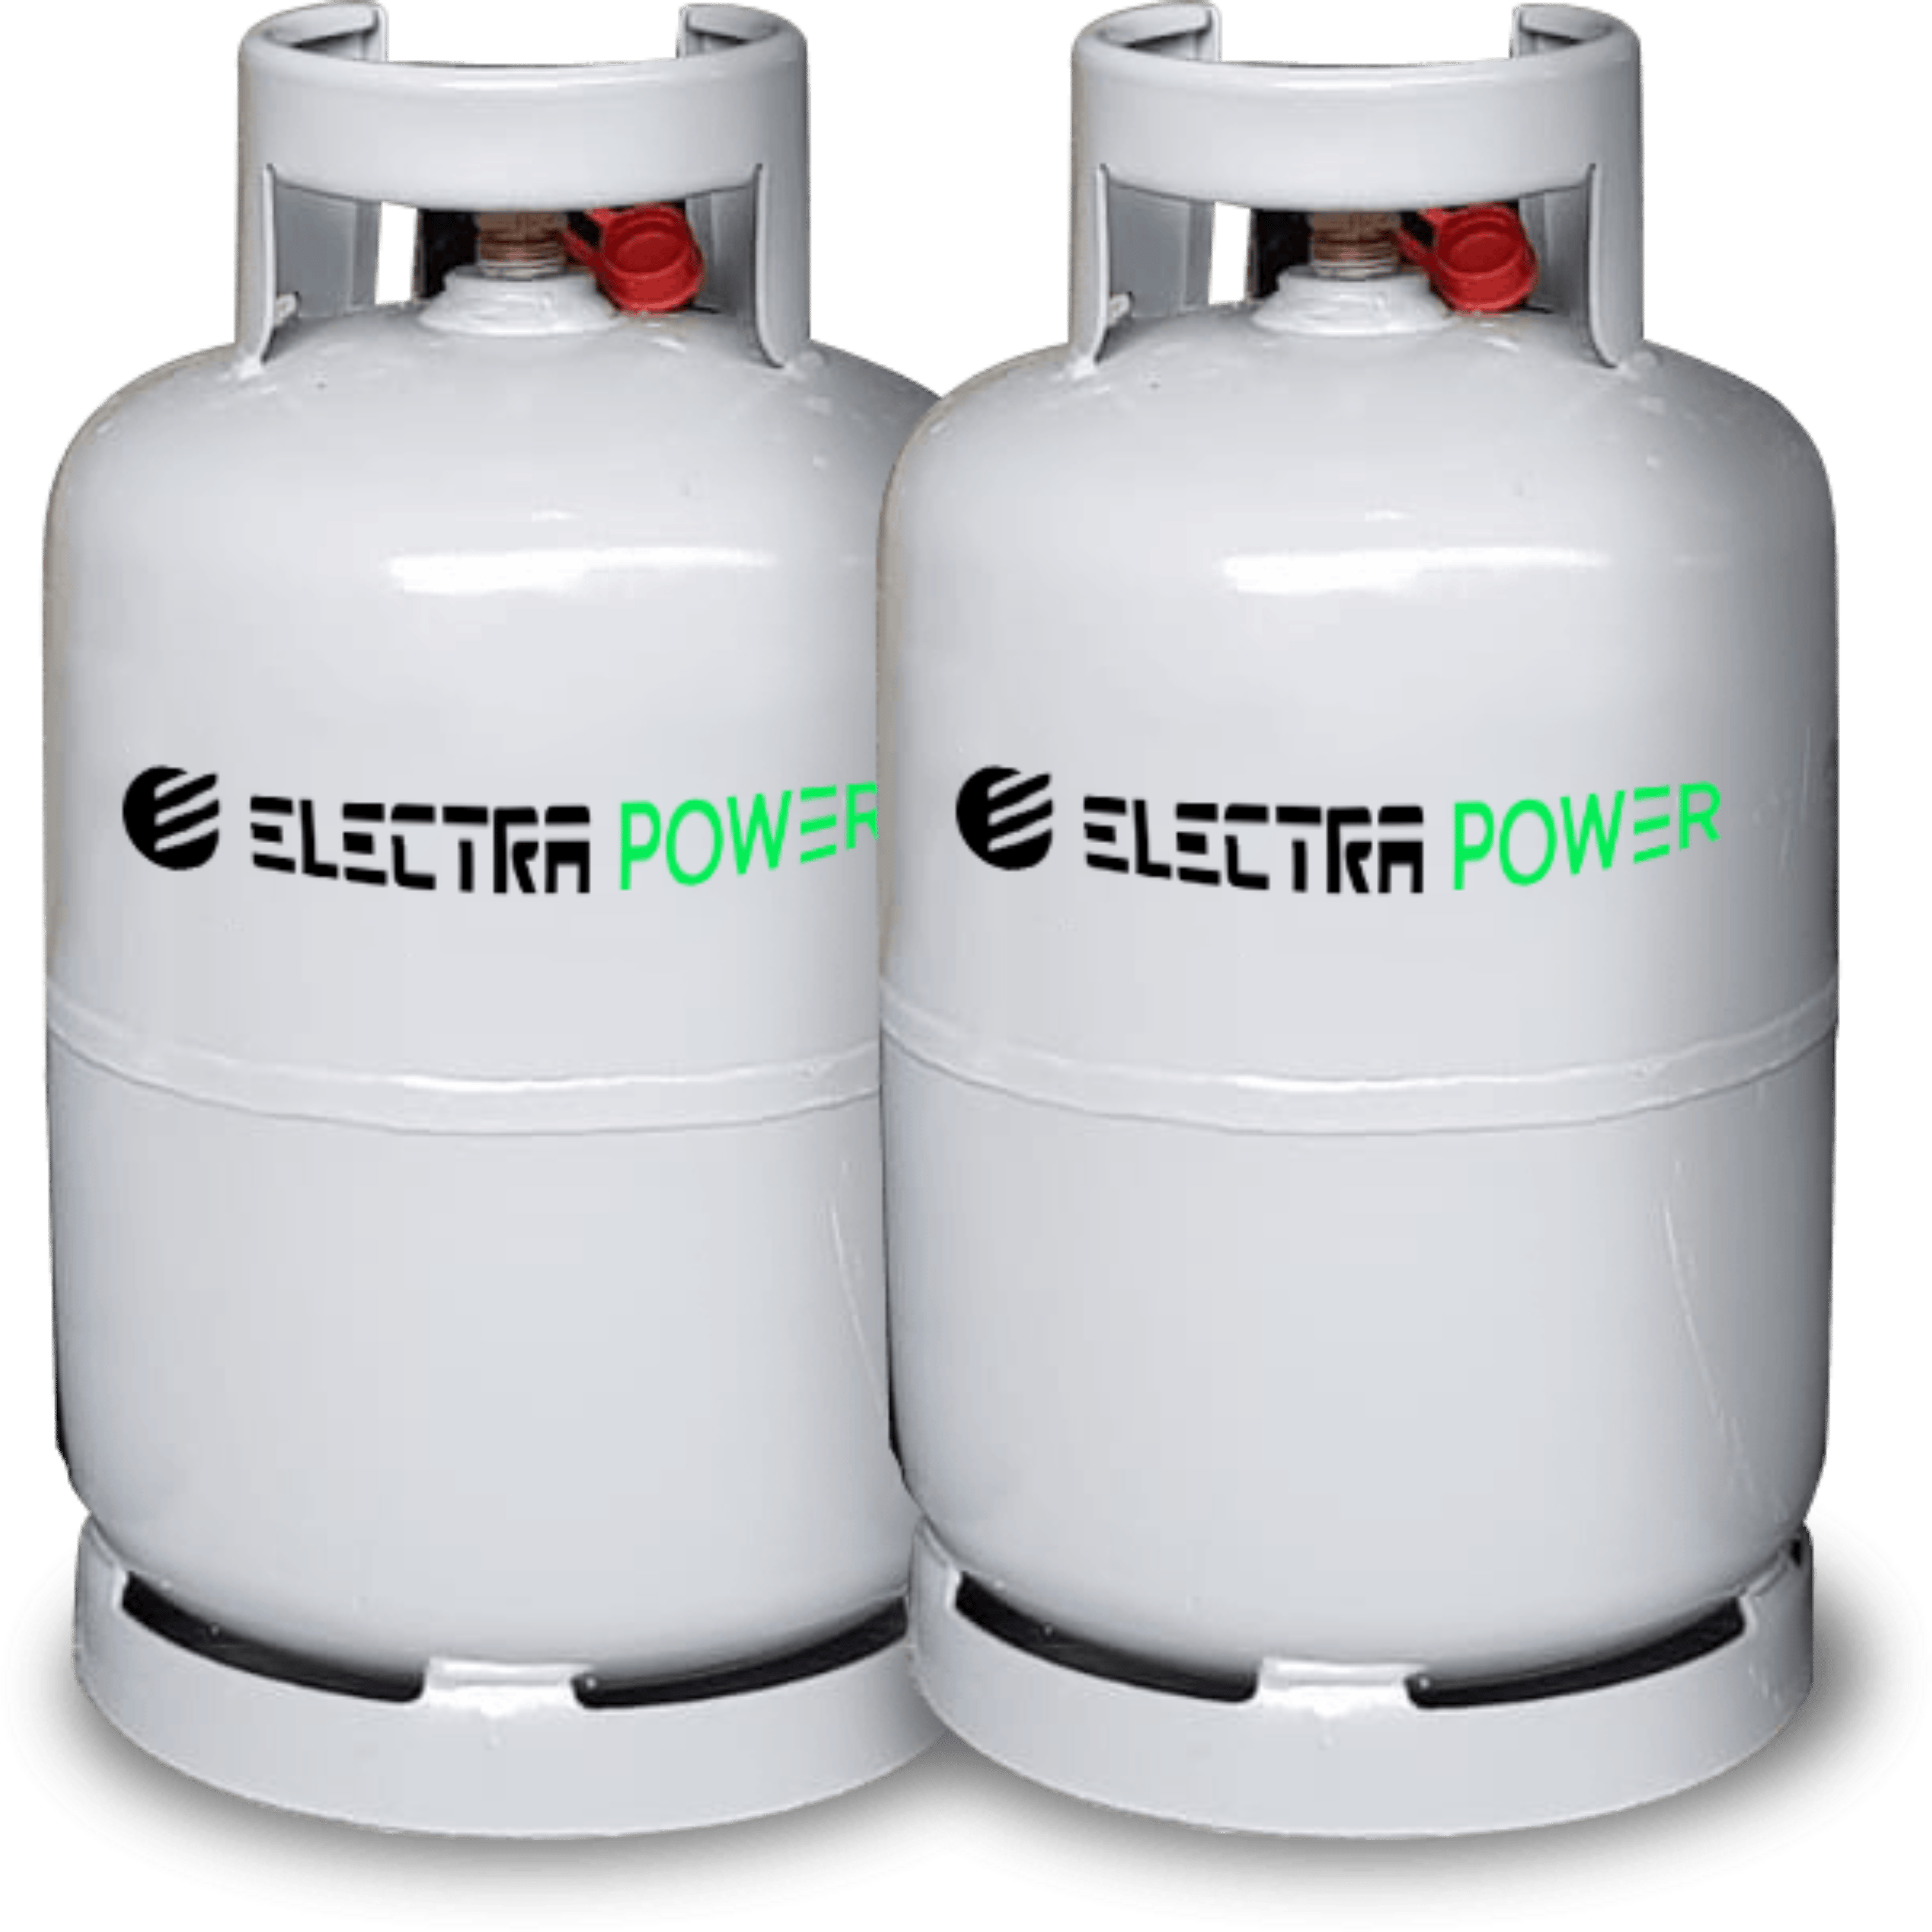 שני בלוני גז למנגל 5 קילו לשימוש רב פעמי Electra Power